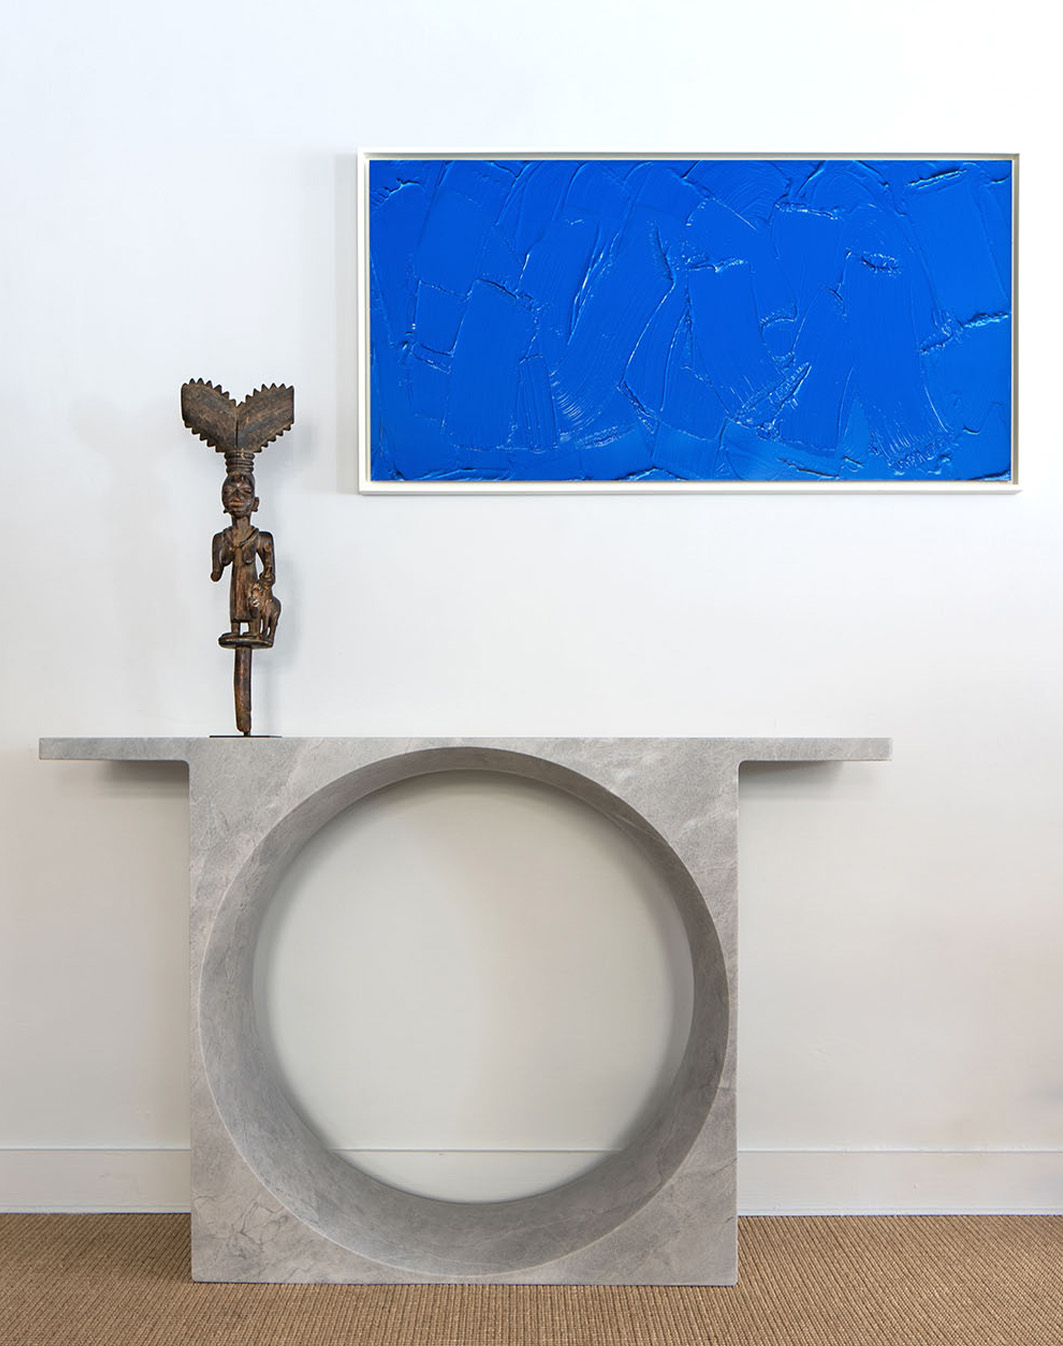 Pierre Paulin - Lucas Ratton x kamel mennour x Galerie kreo in Saint-Tropez